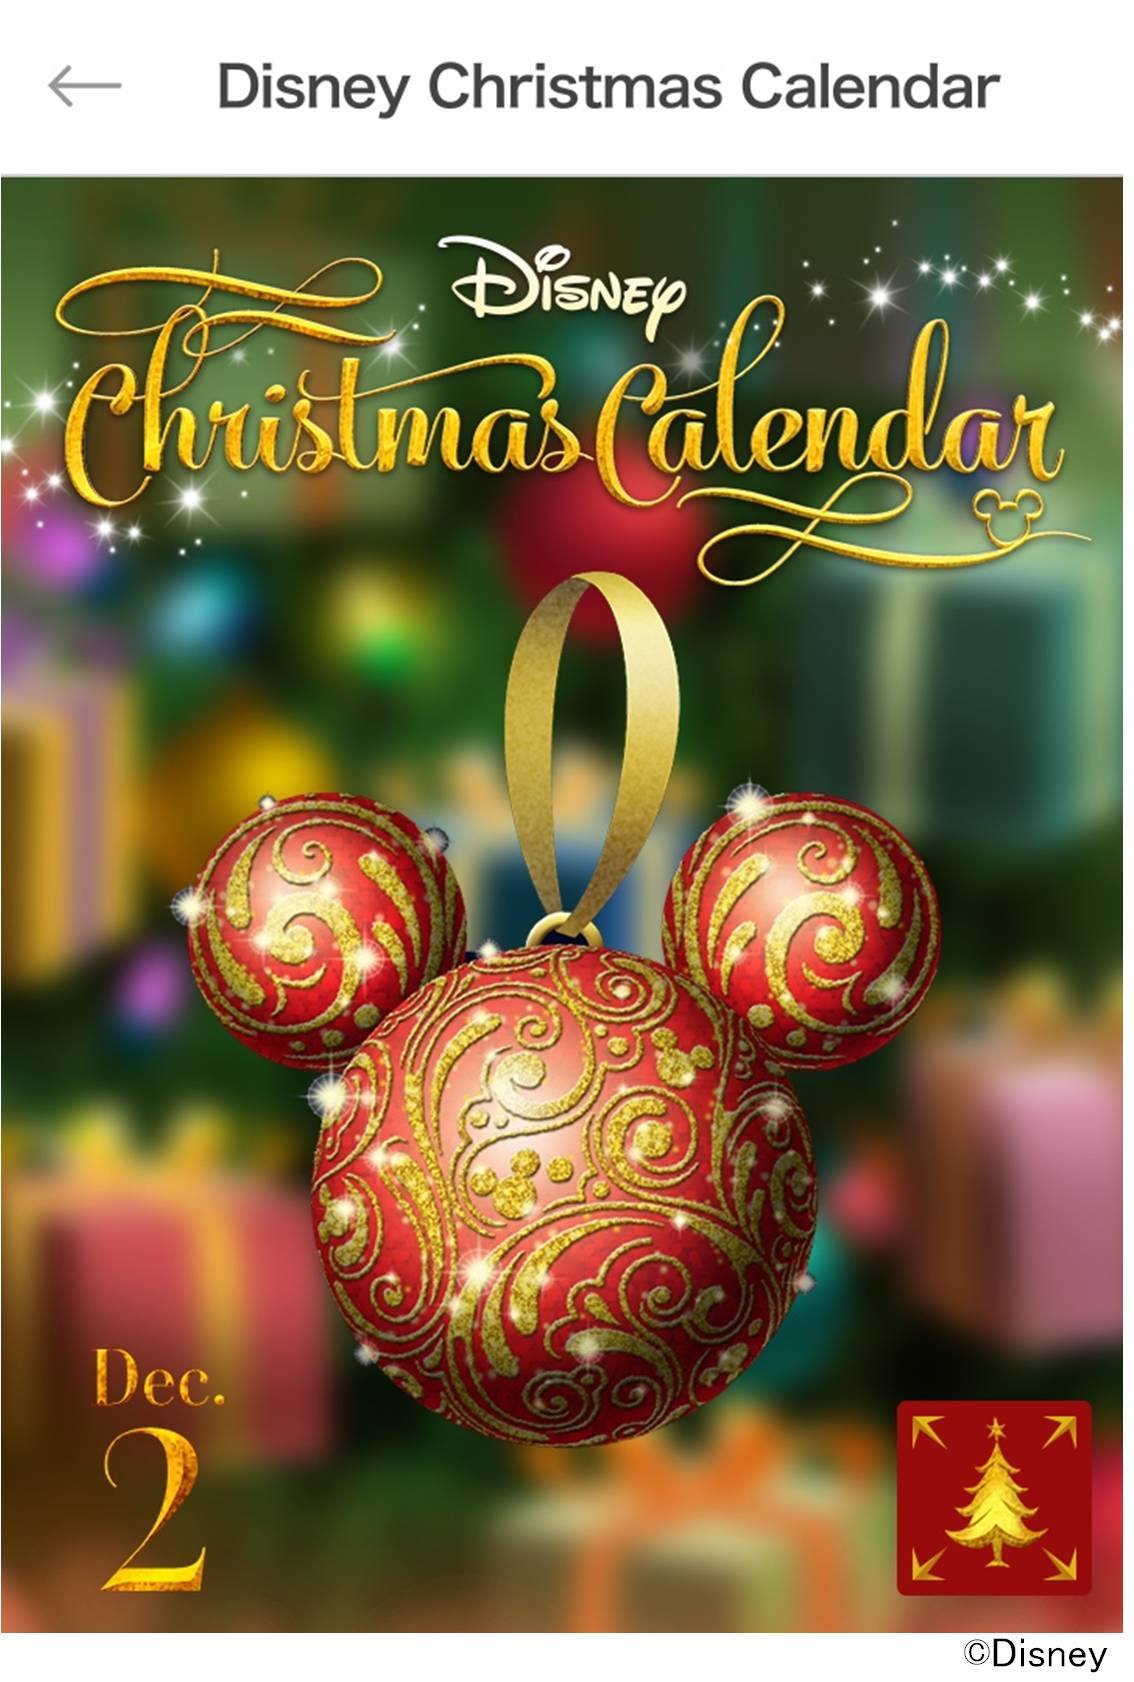 クリスマスまでみんなでカウントダウンを楽しもう 合計170名様にプレゼントがもらえるイベント Disney Christmas Calendar を ディズニーマーケット ディズニーパスで開催 ウォルト ディズニー ジャパン株式会社のプレスリリース